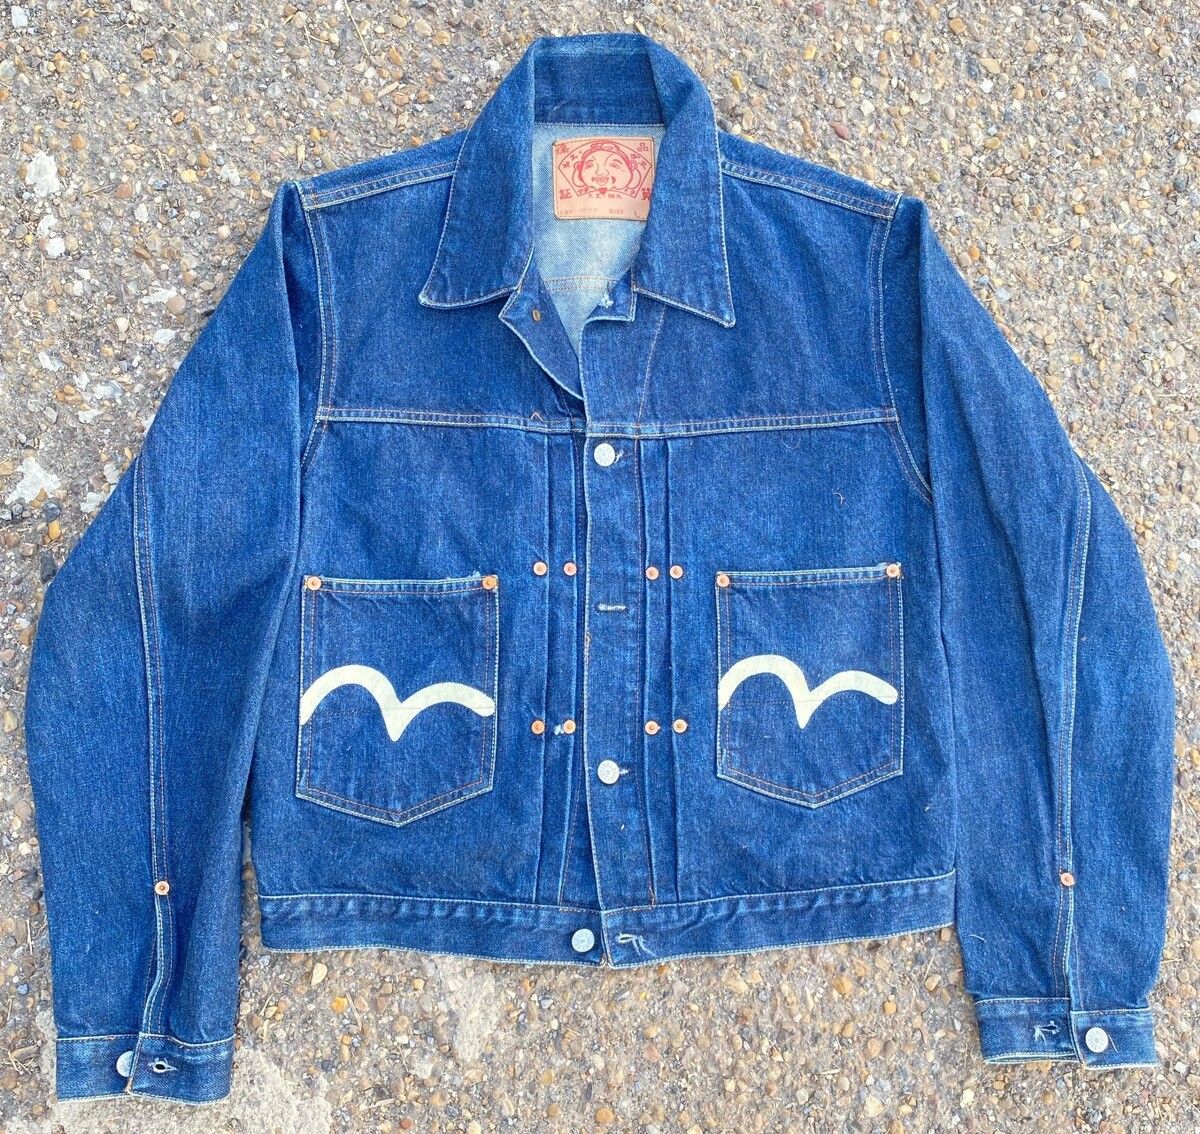 Evisu Vtg Evisu Dark Blue Denim button up jacket Size US S / EU 44-46 / 1 - 1 Preview